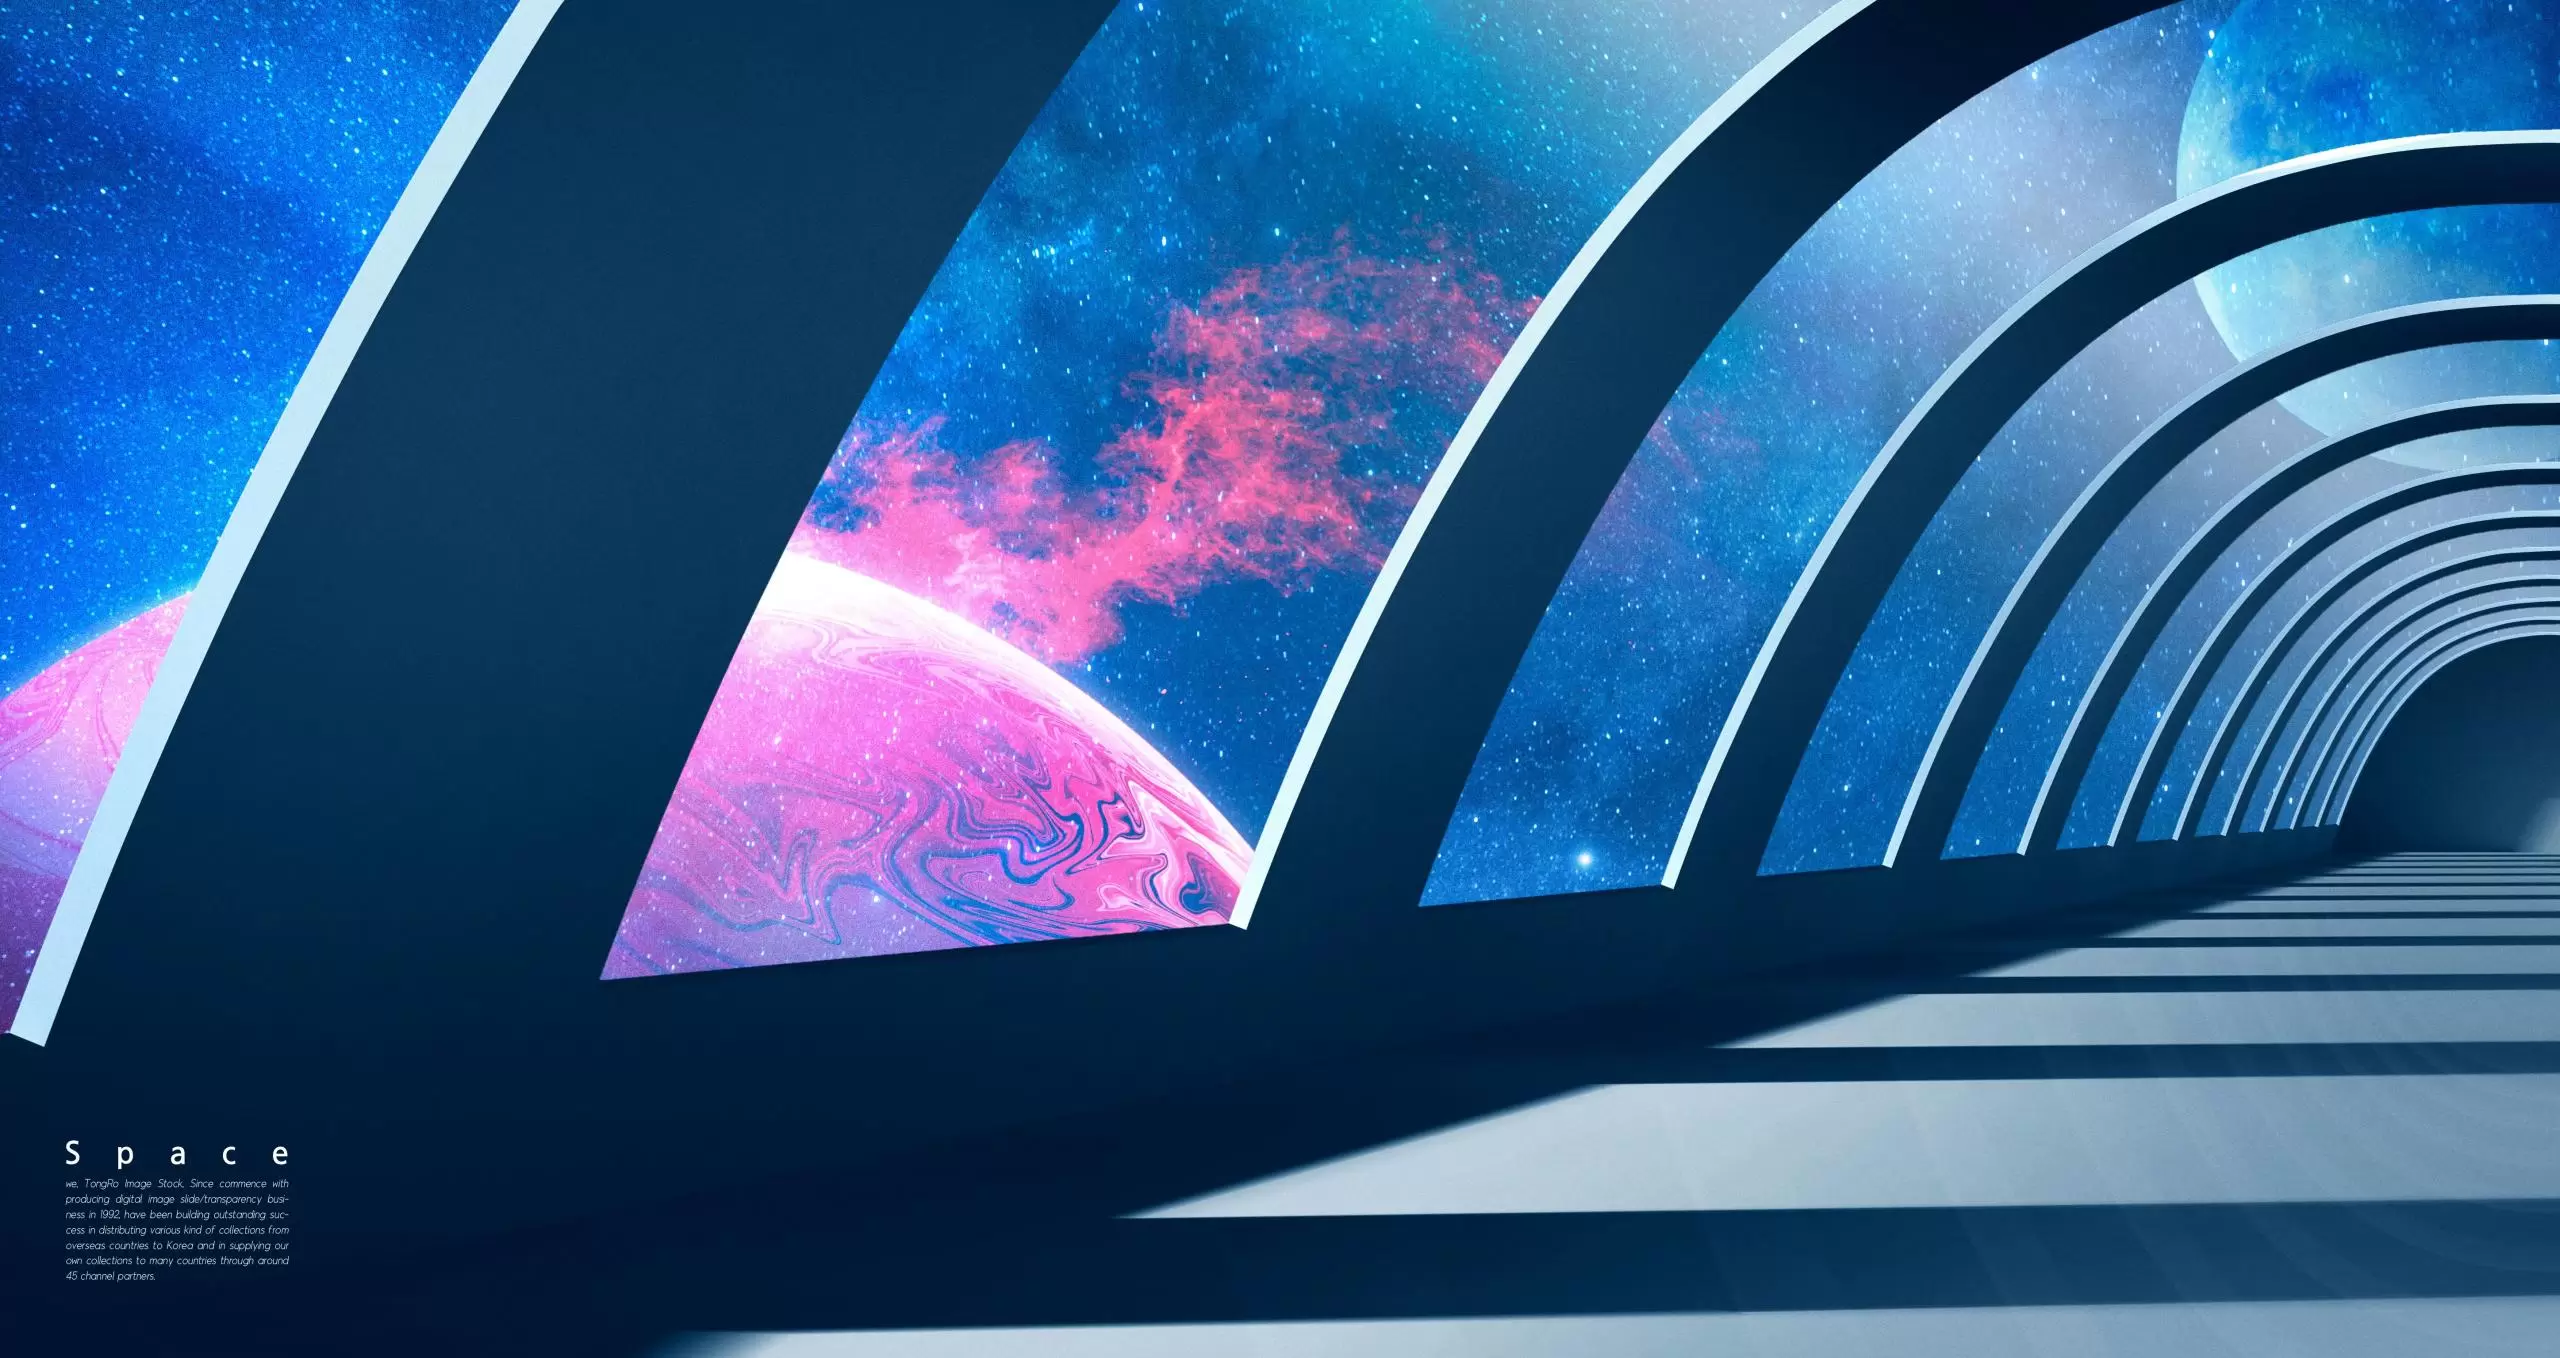 星际空间隧道Banner图背景素材 (psd)插图